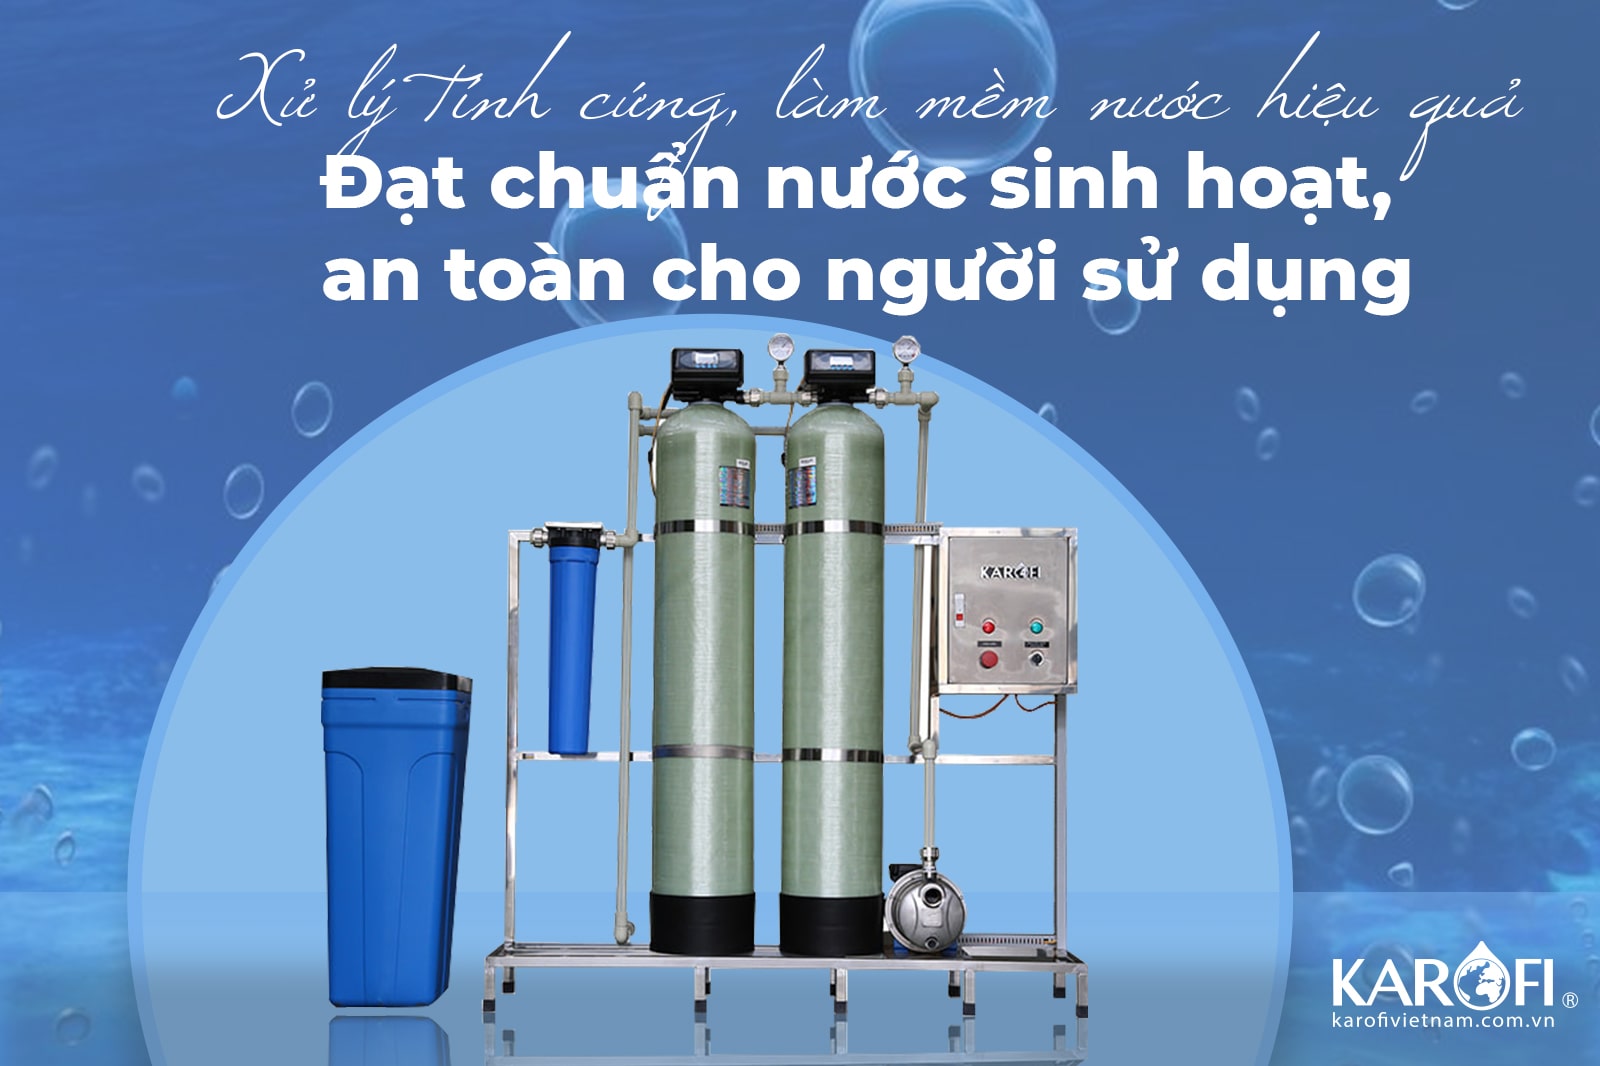 Cột lọc nước thô đầu nguồn là thiết bị có khả năng lọc nước hiệu quả